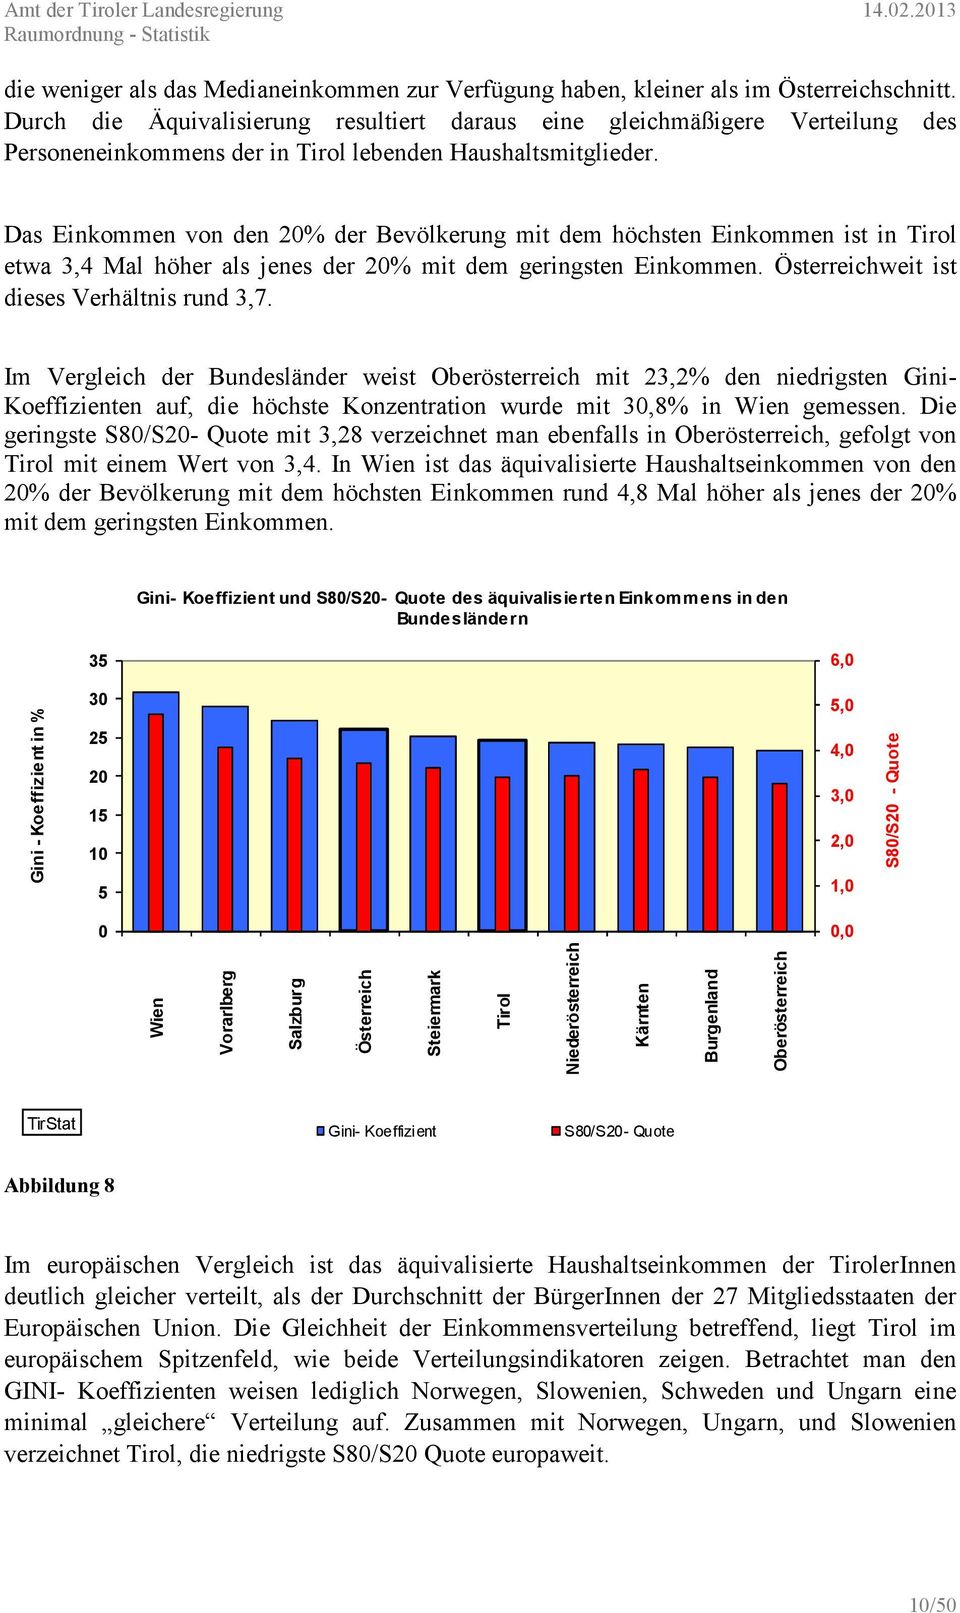 Das Einkommen von den 20% der Bevölkerung mit dem höchsten Einkommen ist in Tirol etwa 3,4 Mal höher als jenes der 20% mit dem geringsten Einkommen. Österreichweit ist dieses Verhältnis rund 3,7.